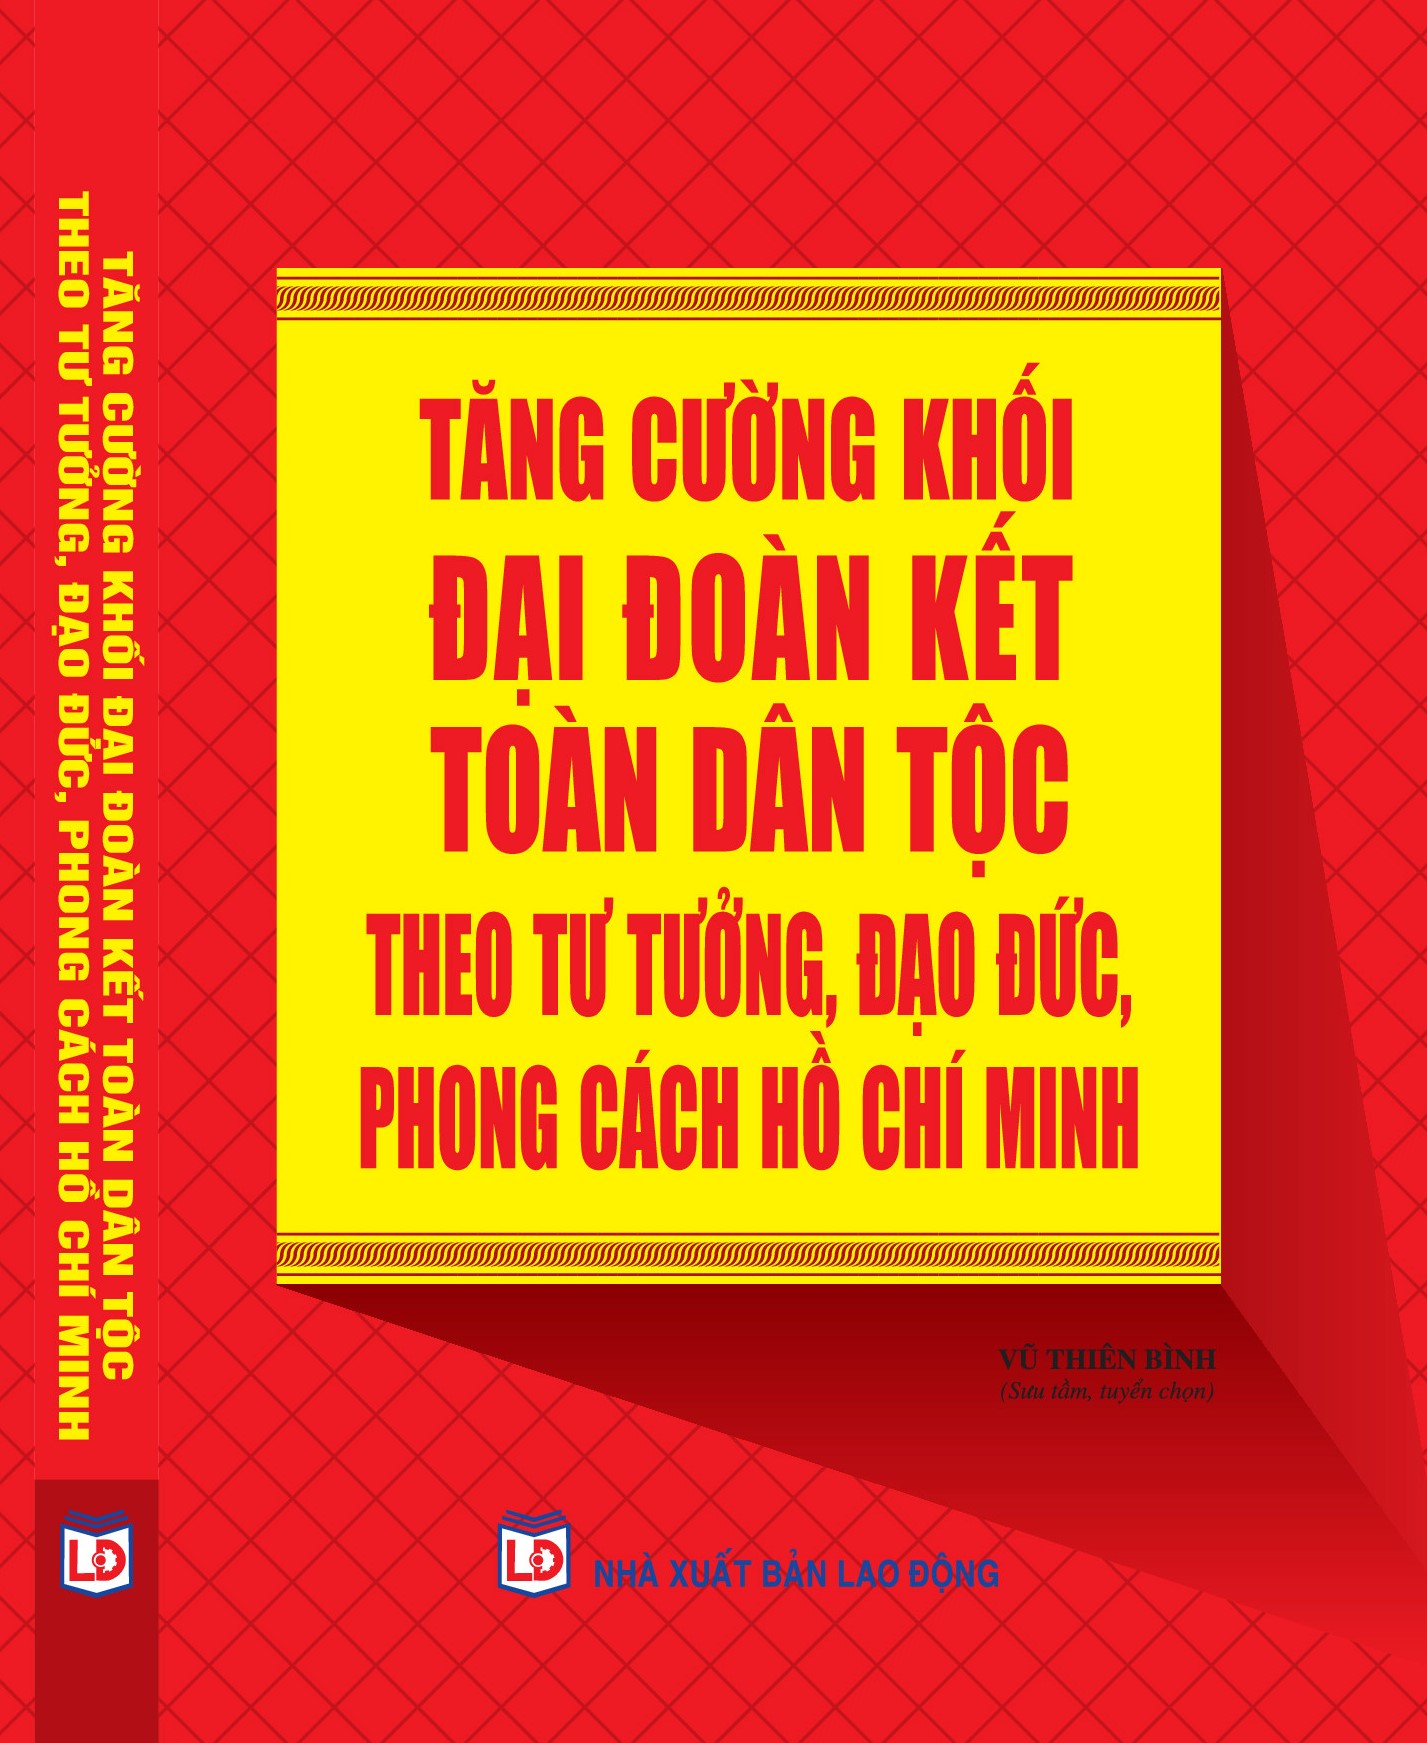 Tăng cường khối đại đoàn kết toàn dân tộc theo tư tưởng, đạo đức, phong cách Hồ Chí Minh.